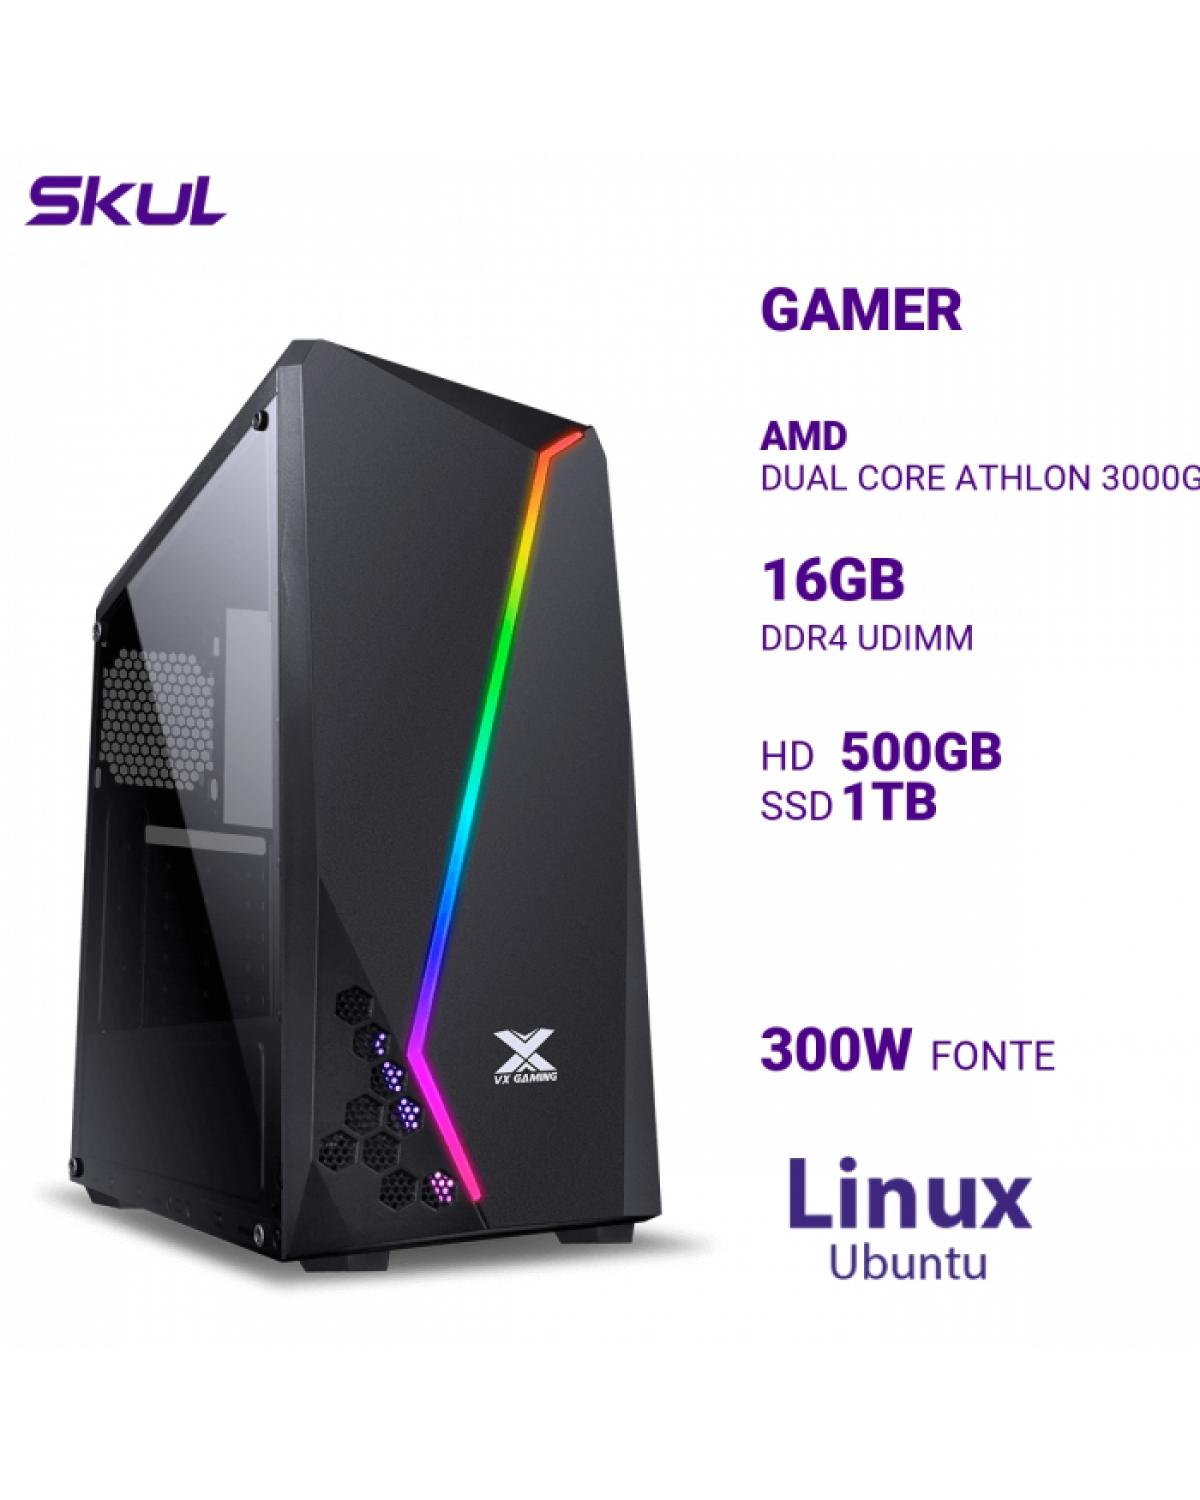 COMPUTADOR GAMER 1000 DUAL CORE ATHLON 3000G 3.50GHZ MEM 16GB DDR4 HD 500GB SSD 1TB NVME FONTE 300W LINUX